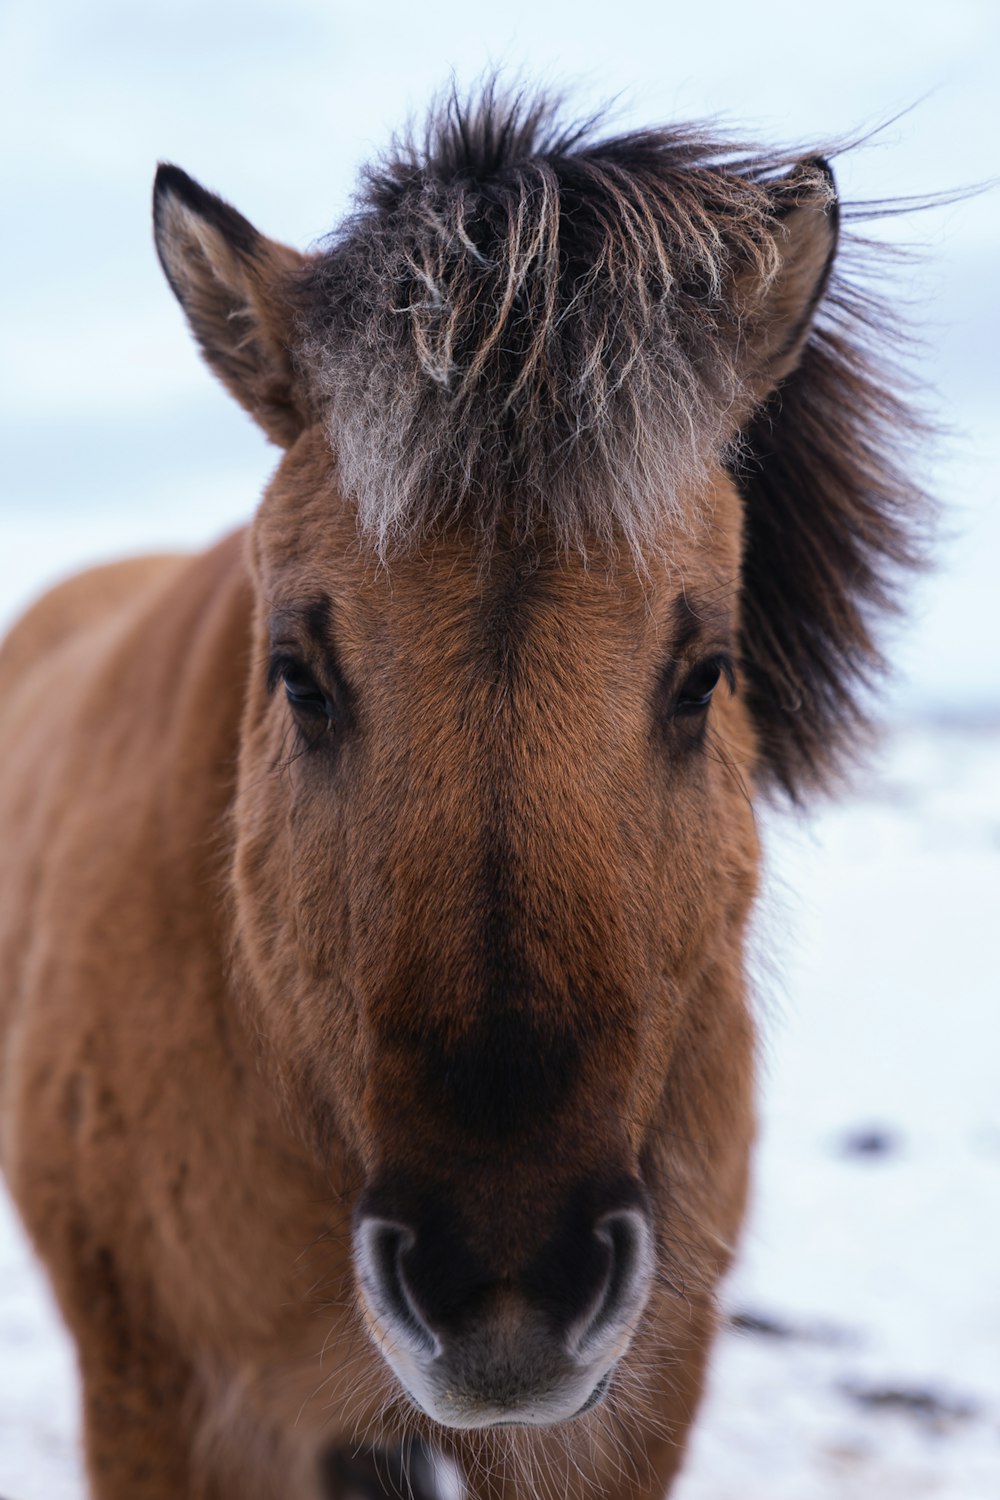 昼間の雪に覆われた地面に茶色の馬